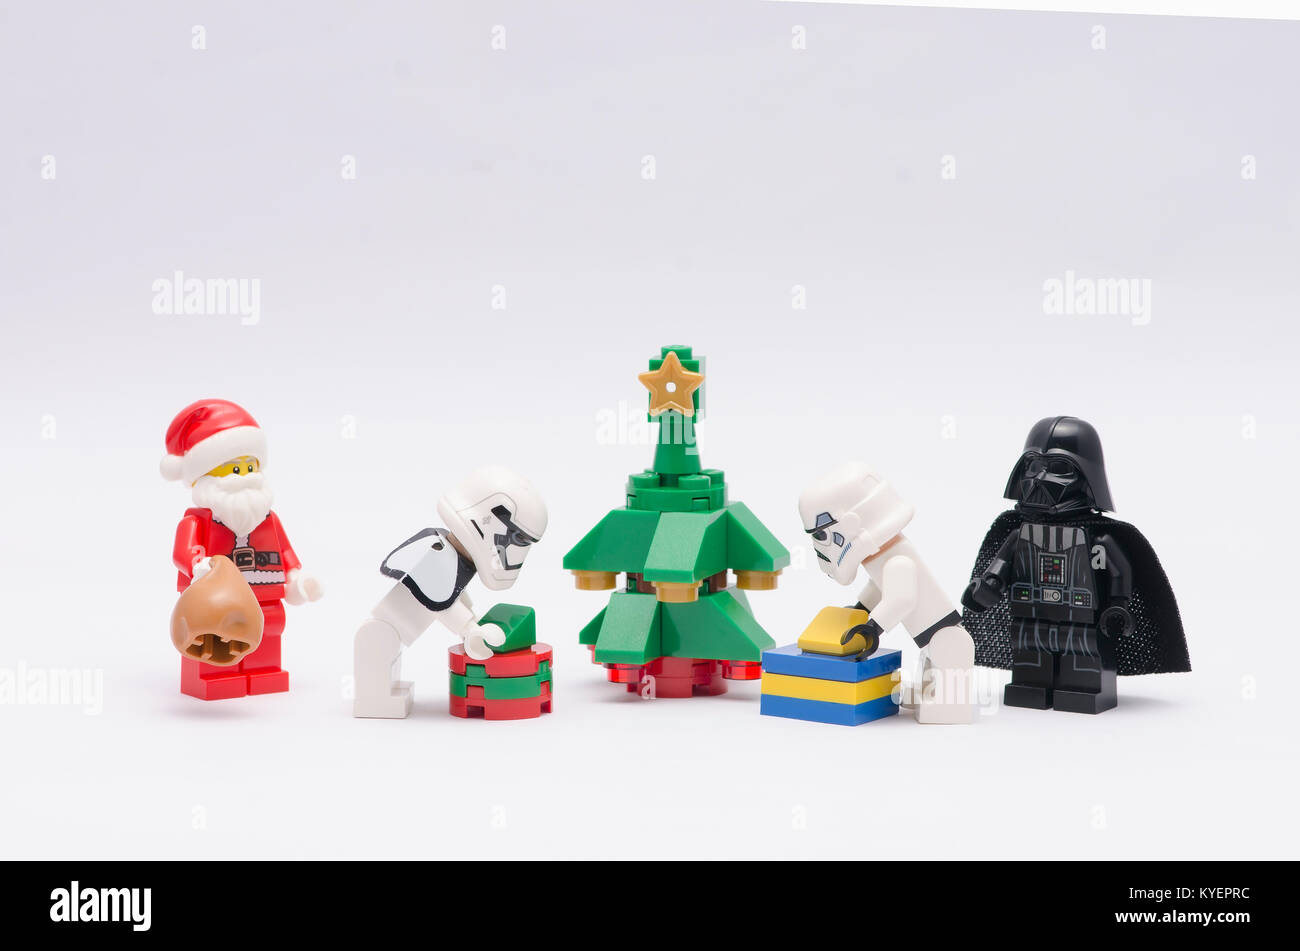 Lego santa claus und Darth Vader, Storm Trooper Weihnachtsbaum schmücken  Stockfotografie - Alamy